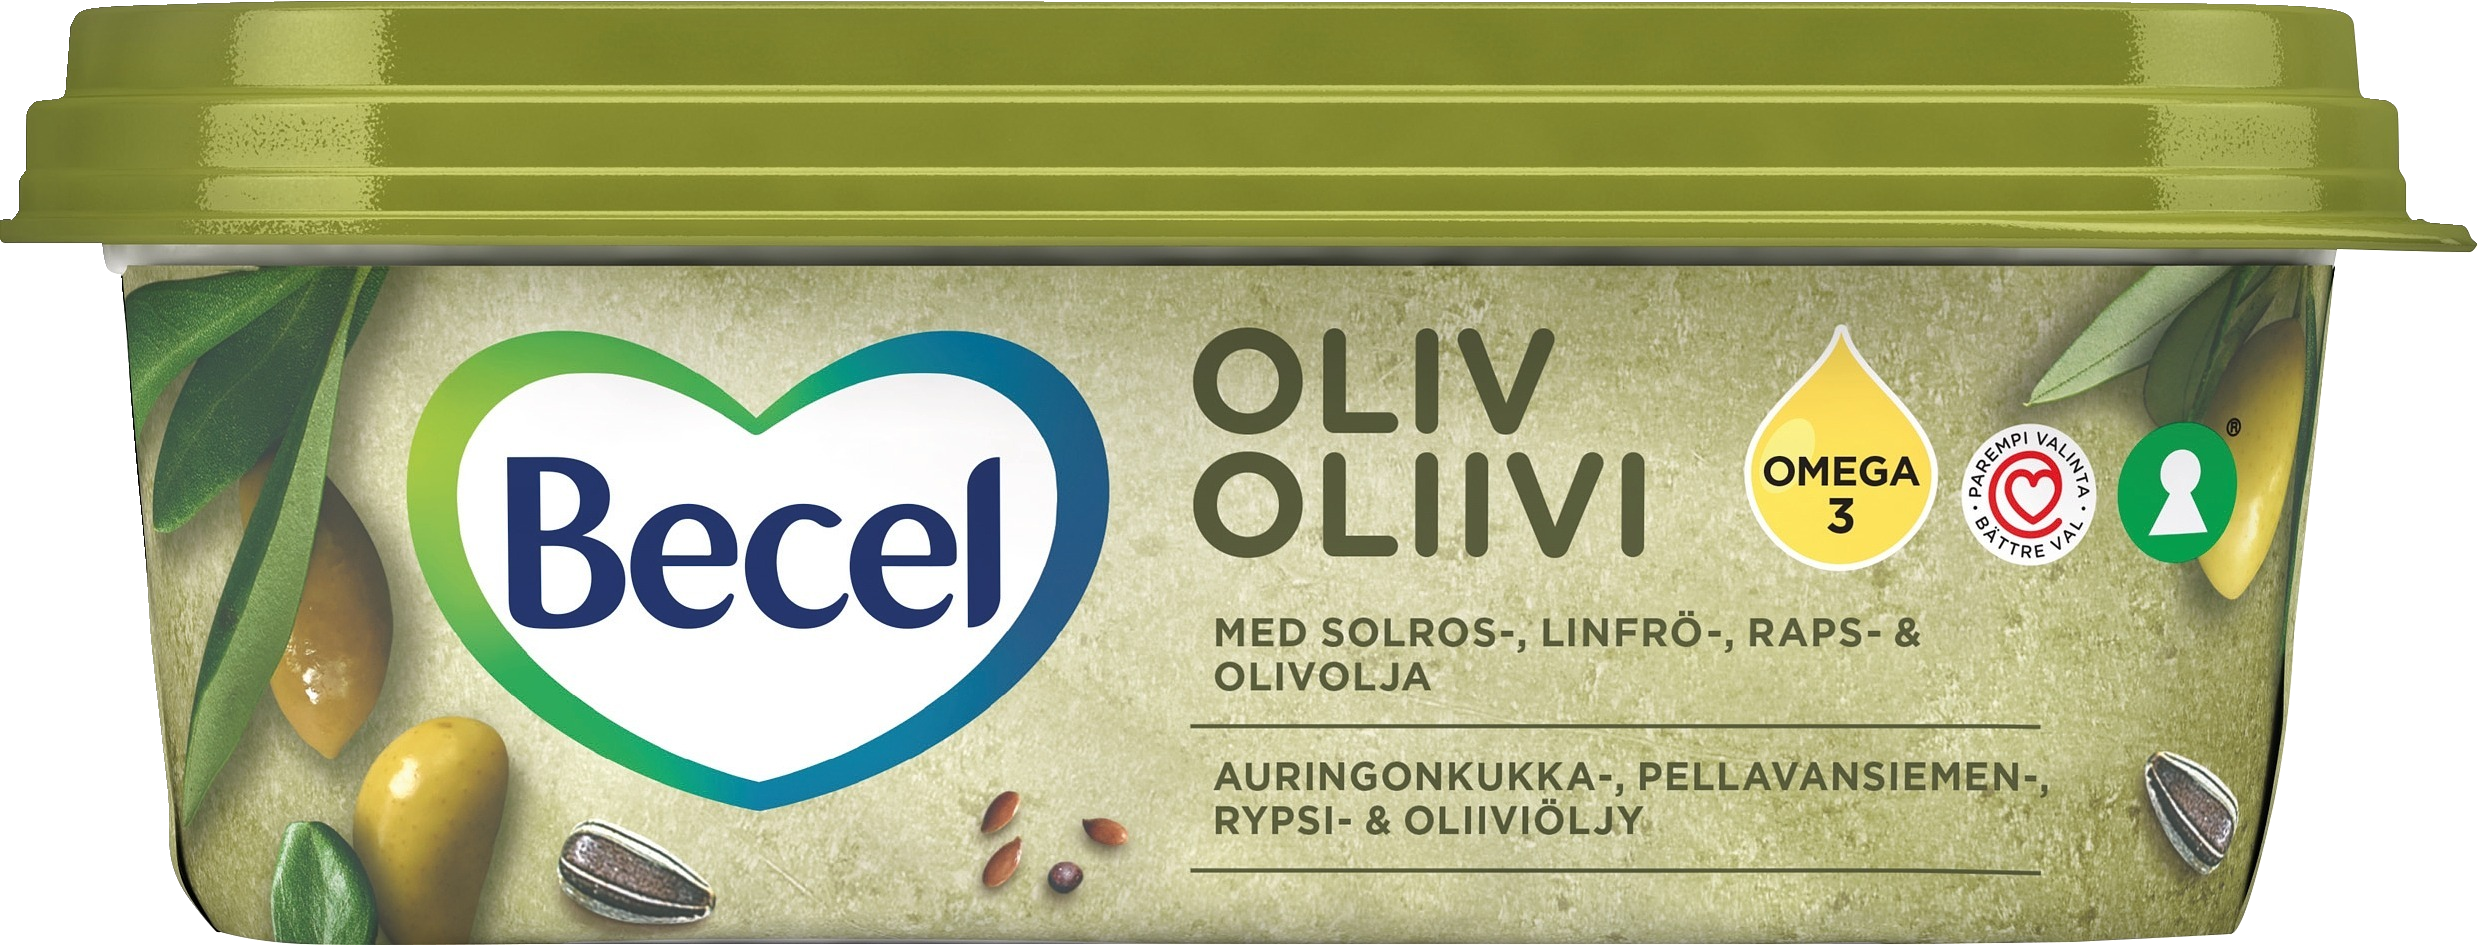 Becel 380g Oliivi 38% kasvirasvalevite